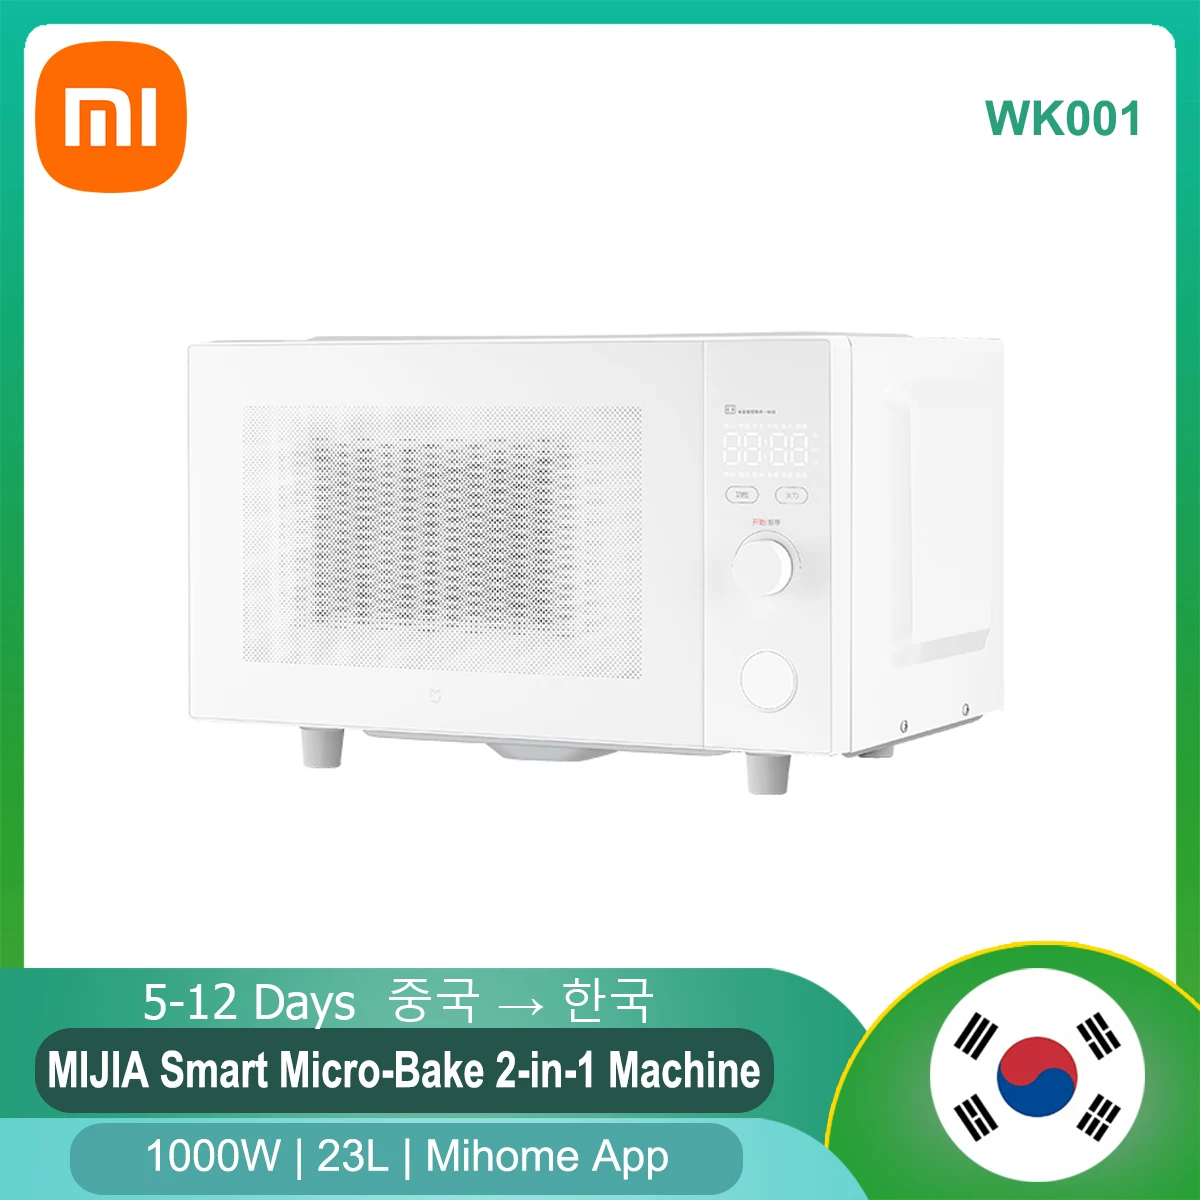 23l Wk001 1280w Electric Bake Microwave Stove App Control Ki